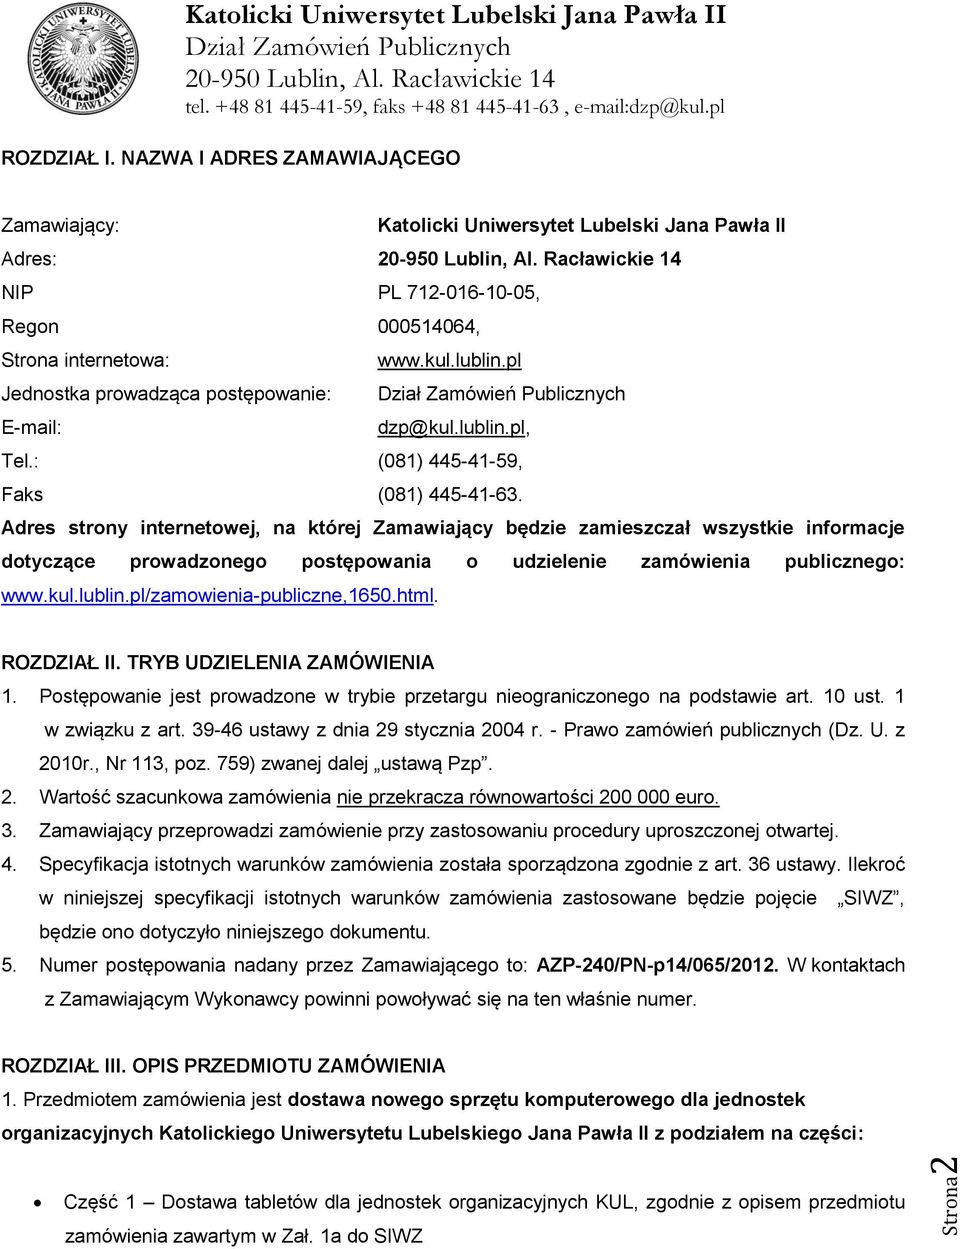 Adres strony internetowej, na której Zamawiający będzie zamieszczał wszystkie informacje dotyczące prowadzonego postępowania o udzielenie zamówienia publicznego: www.kul.lublin.